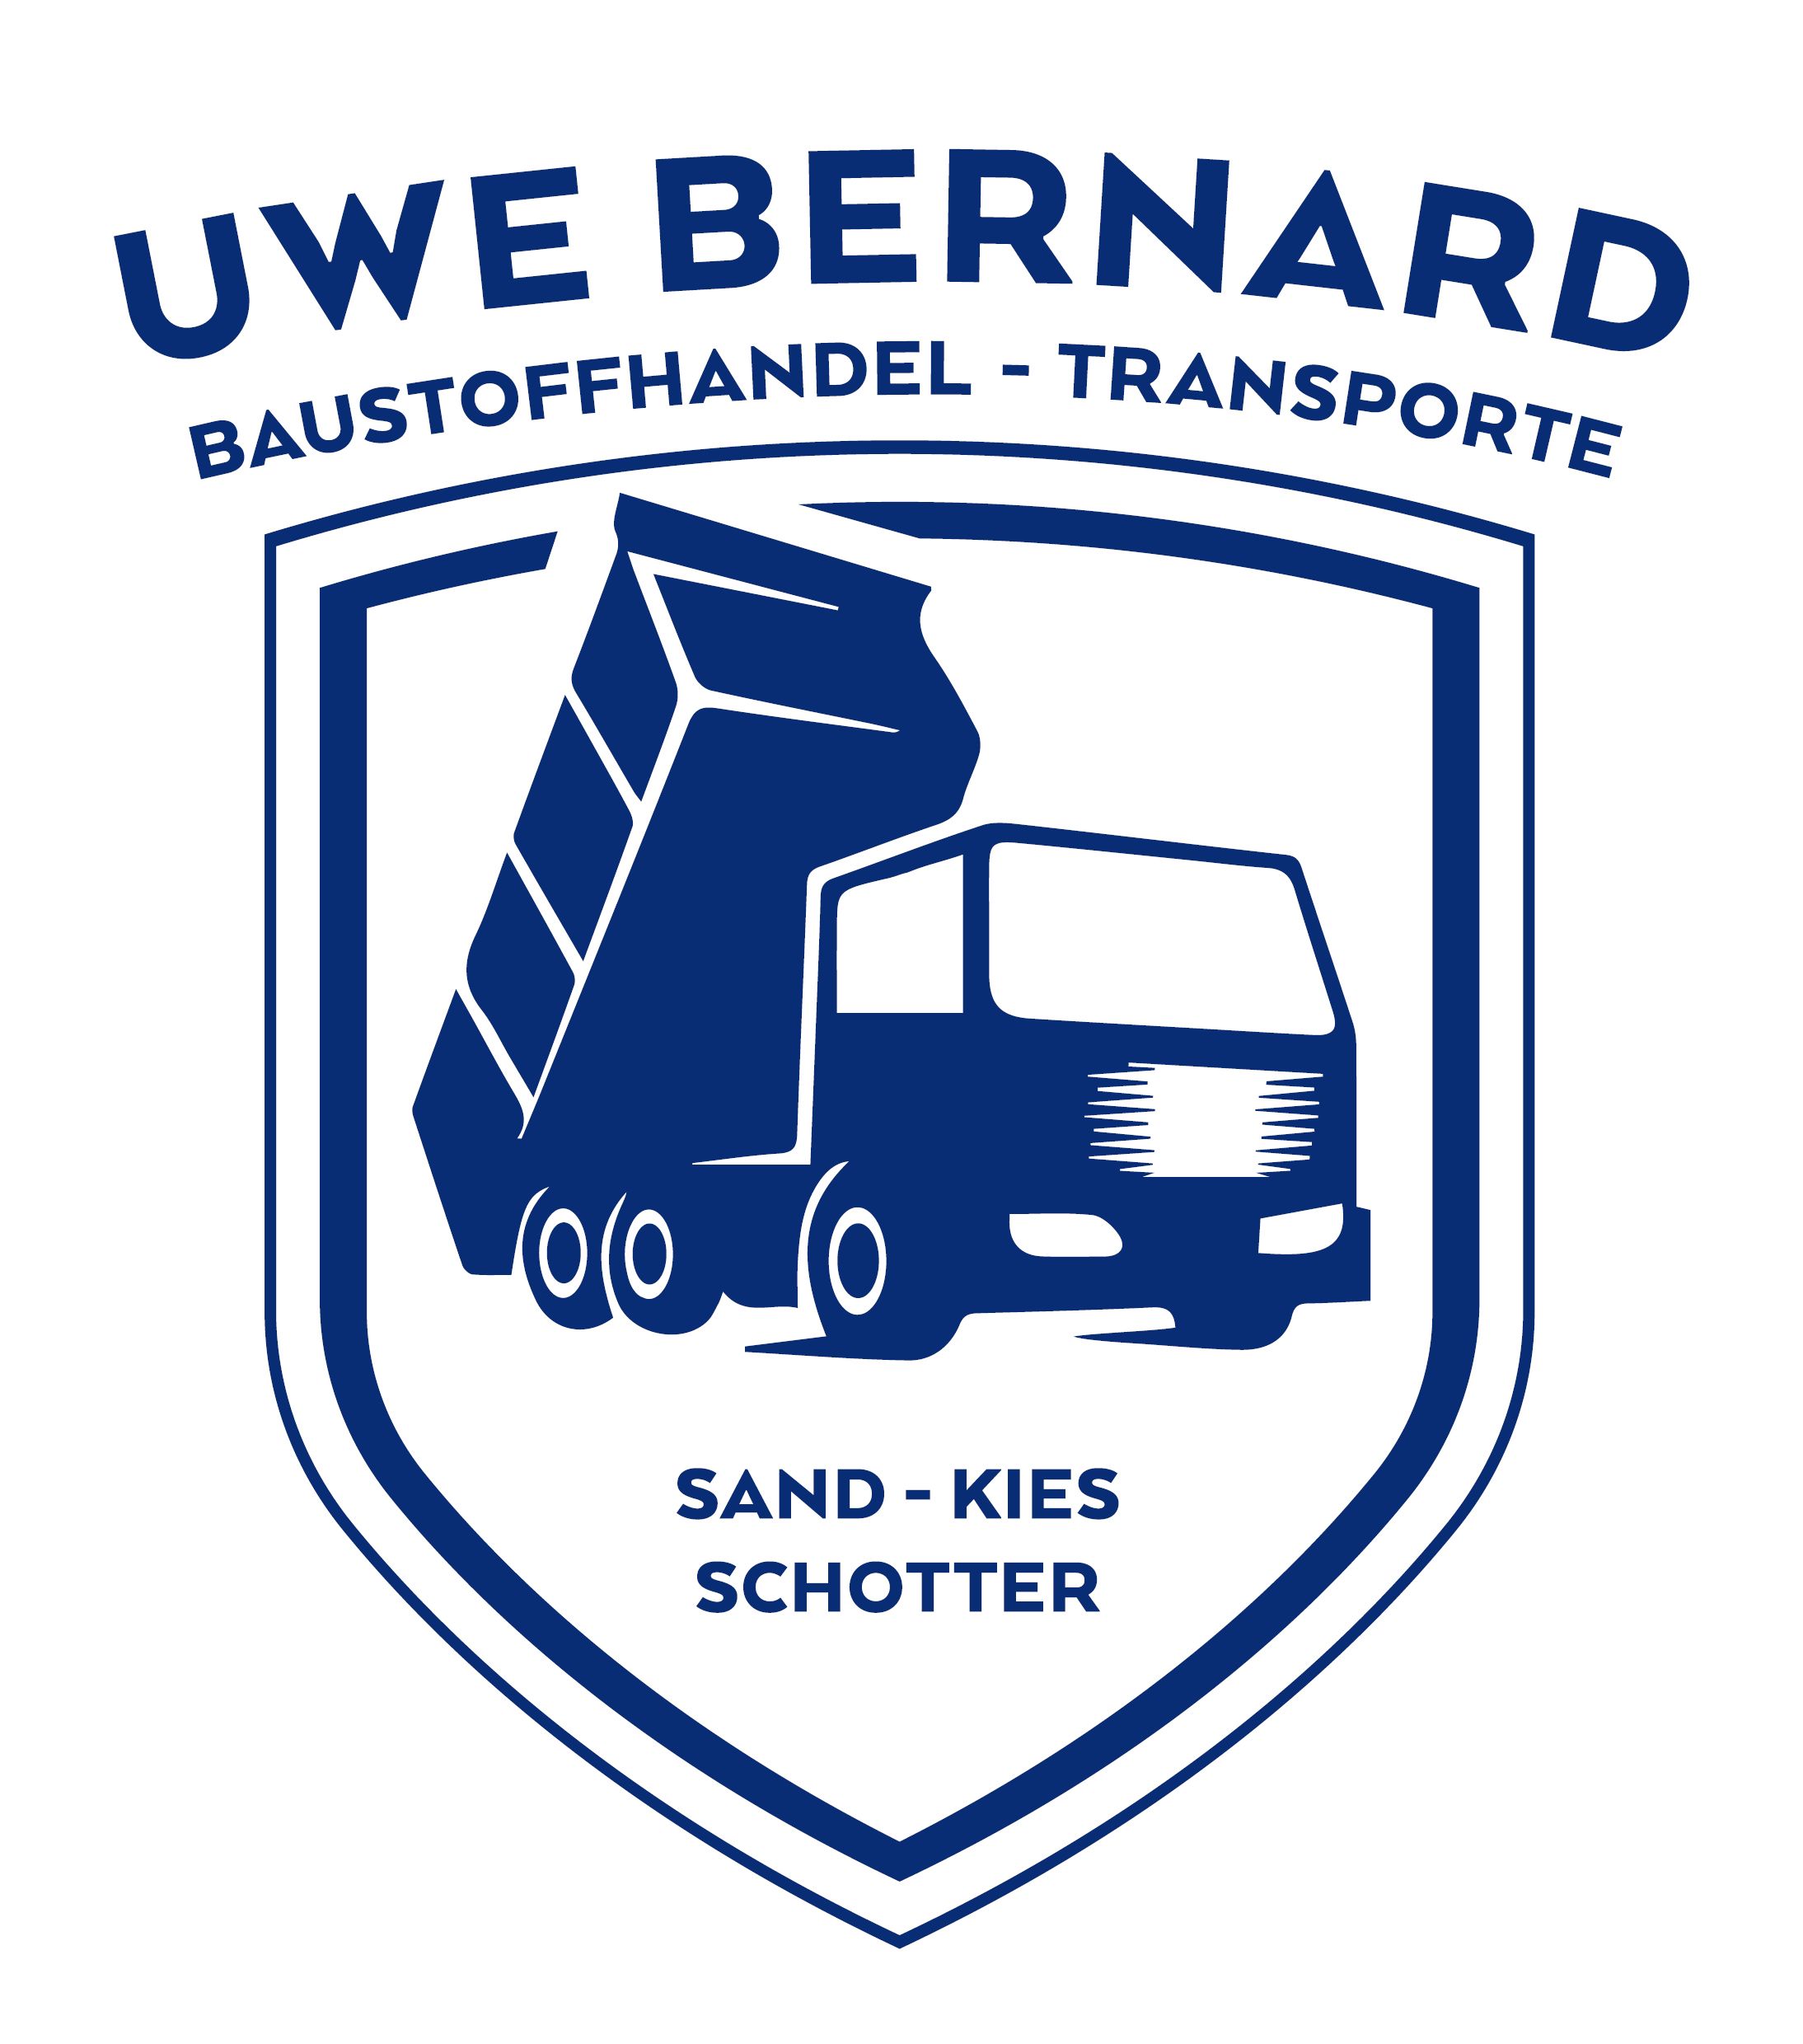 Uwe Bernard GmbH & Co. KG